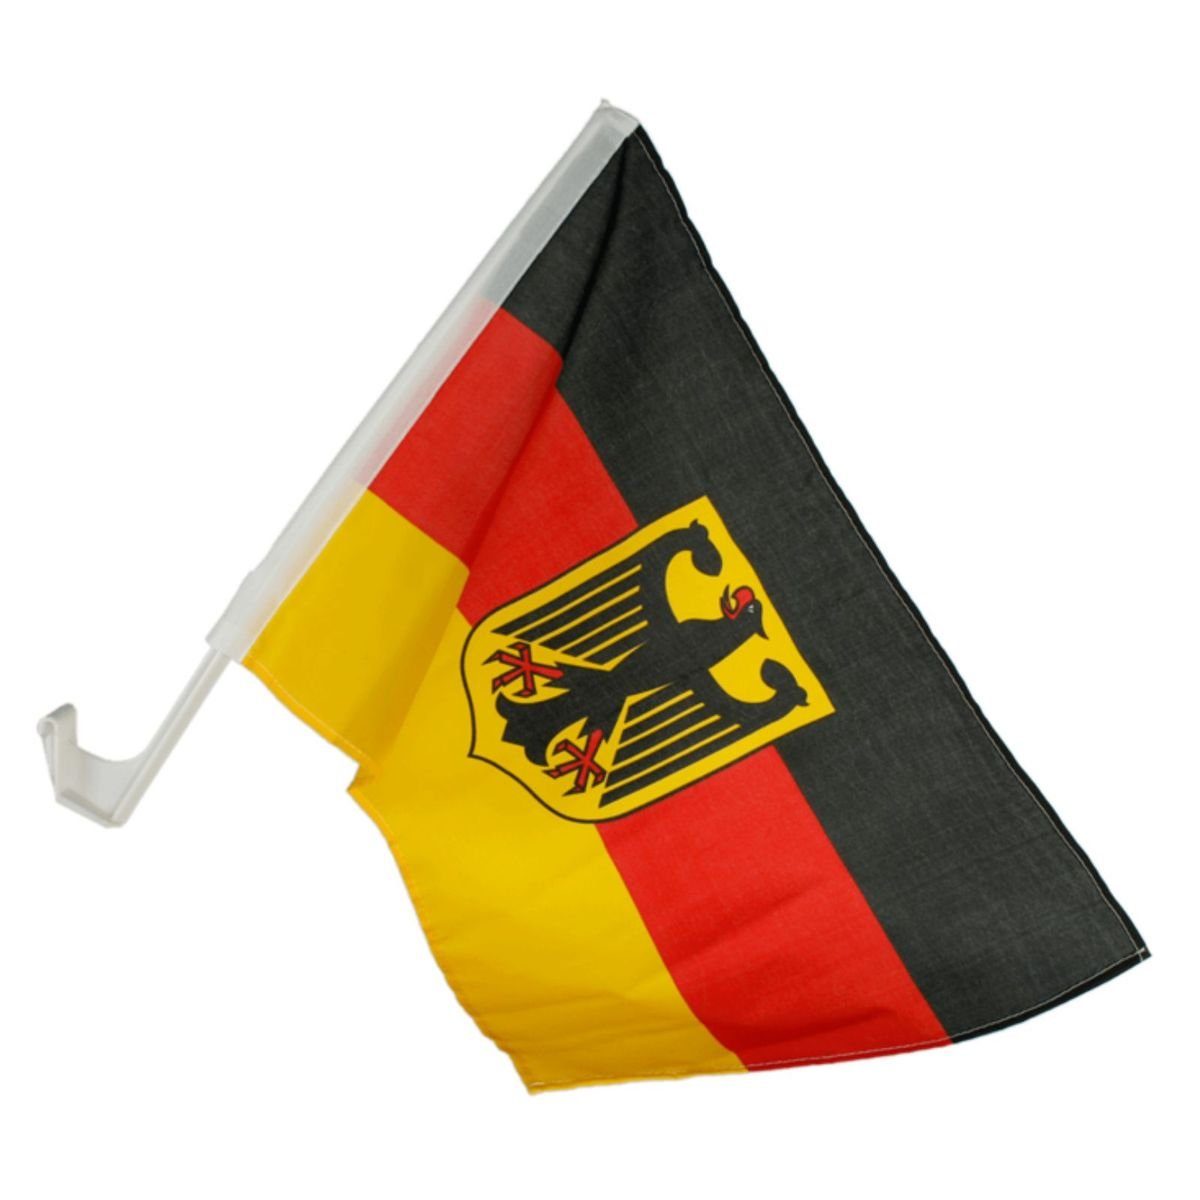 https://i.otto.de/i/otto/ef8d1af8-a62f-57f4-9872-d26c67978fac/out-of-the-blue-flagge-deutschlandflagge-fuer-autos-mit-bundesadler-ca-30-x-45-cm-2er-set.jpg?$formatz$